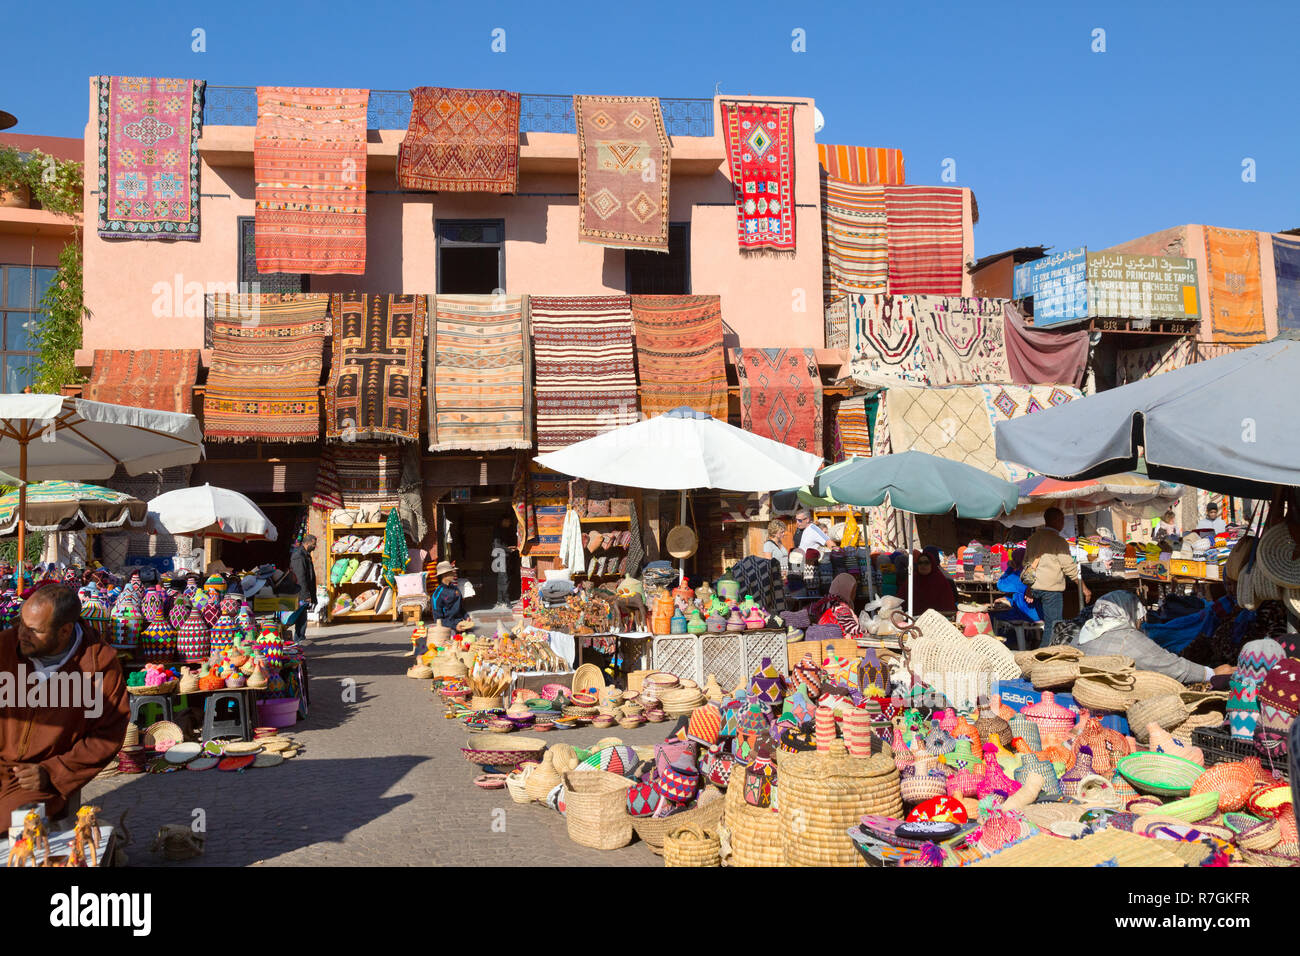 Il souk di Marrakech - merci colorate e tappeti in vendita nei souks, medina di Marrakech, Marocco marrakech Africa Foto Stock